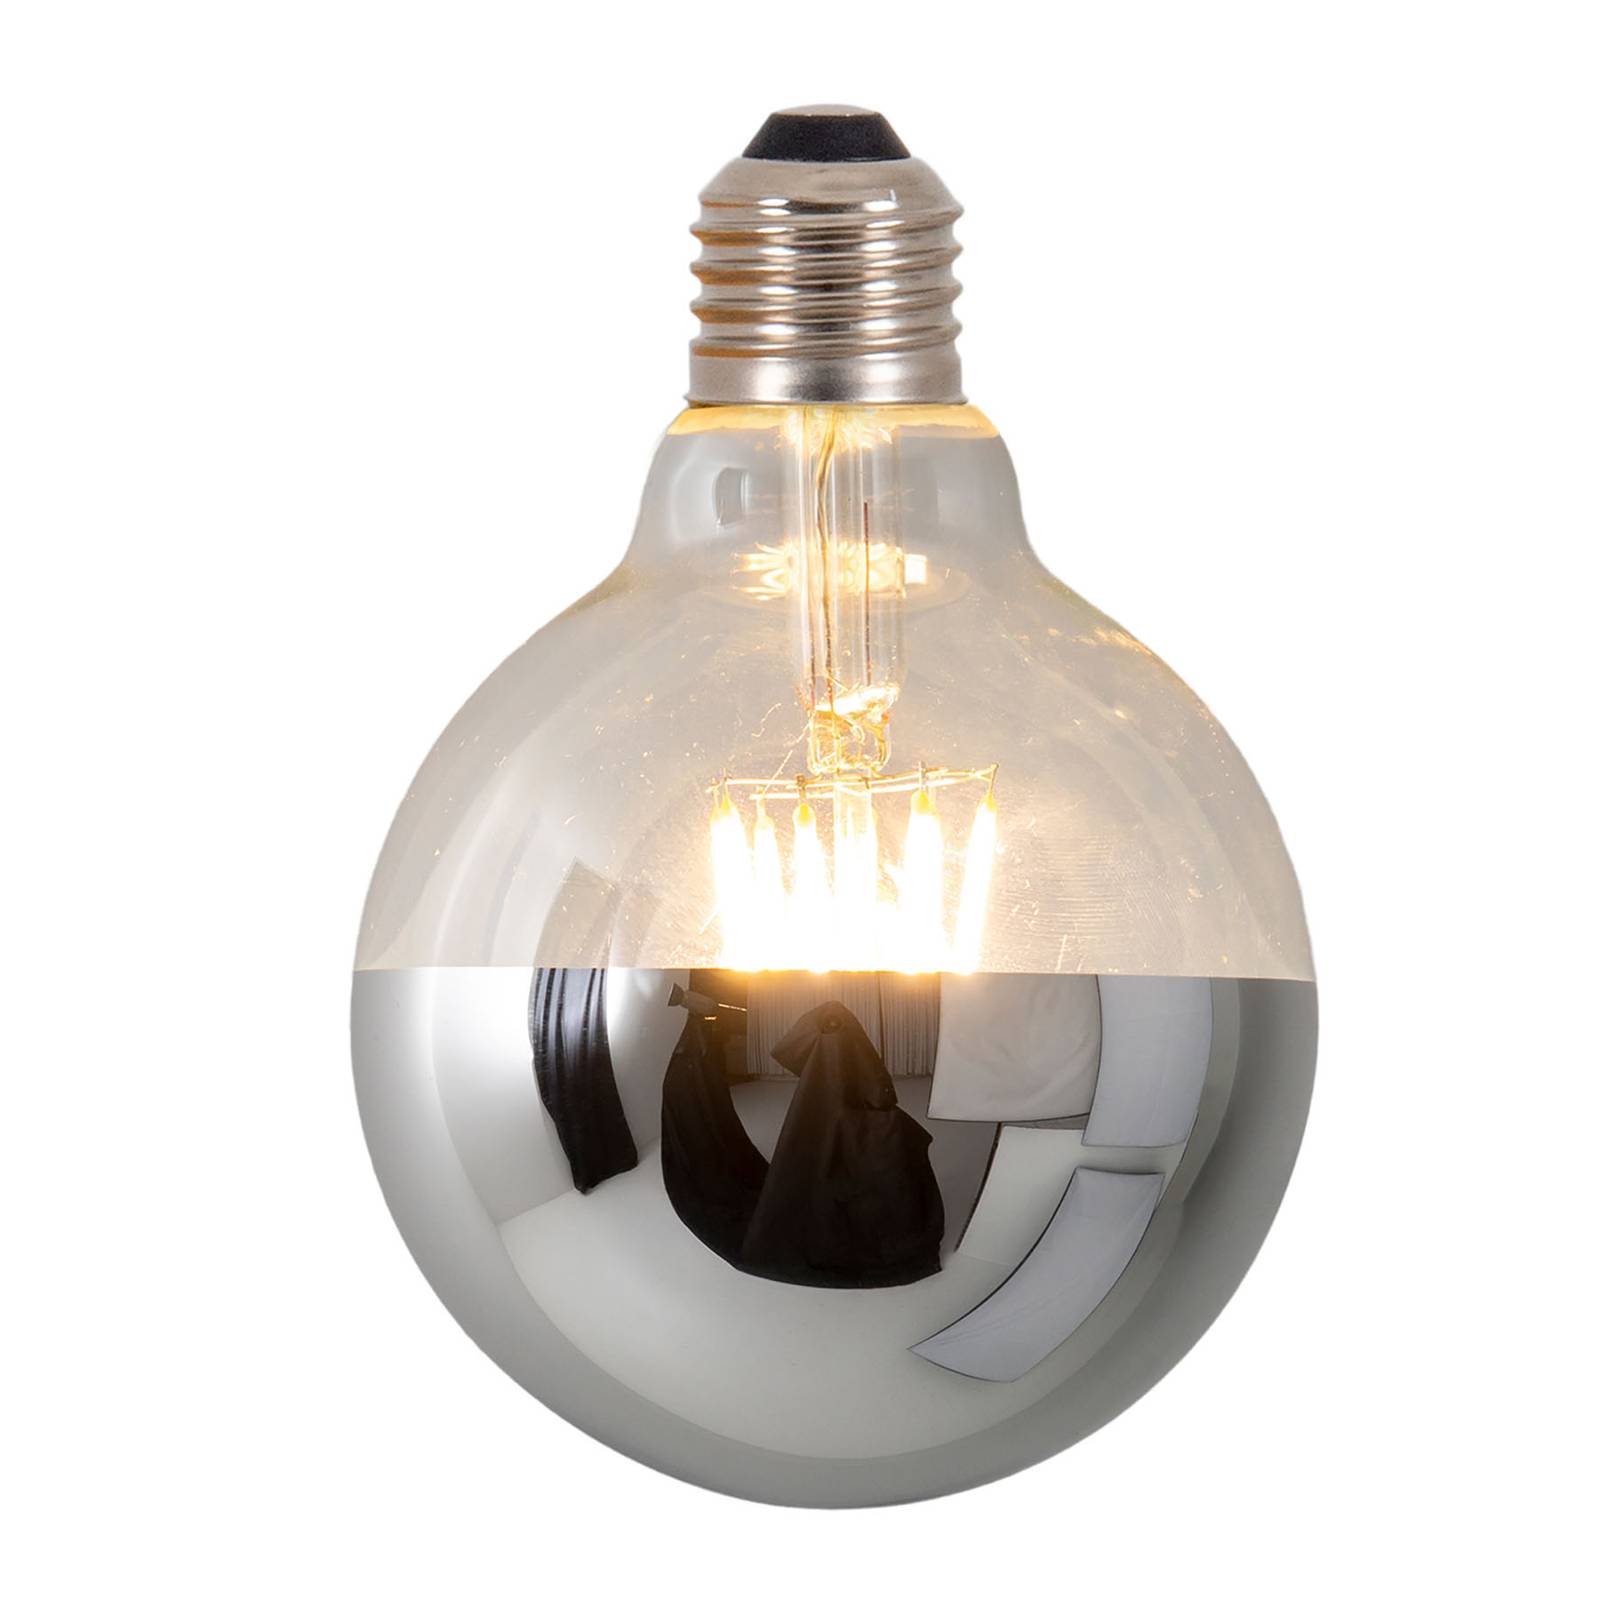 Naeve Leuchten LED-Kopfspiegellampe Tomy, E27 8W dimmbar silber